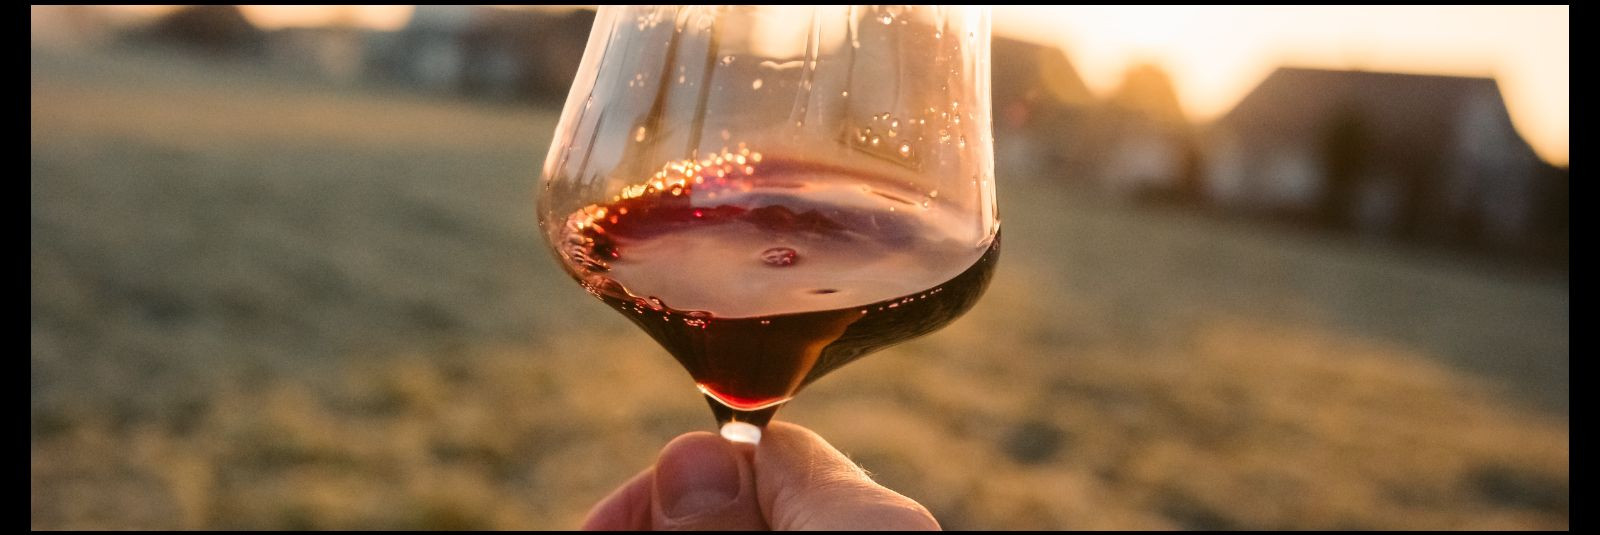 Vein on olnud kultuuriline ja ajalooline joogitüüp juba tuhandeid aastaid ning sellel on olnud oluline roll paljudes kultuurides üle maailma. Veinikultuur on ri